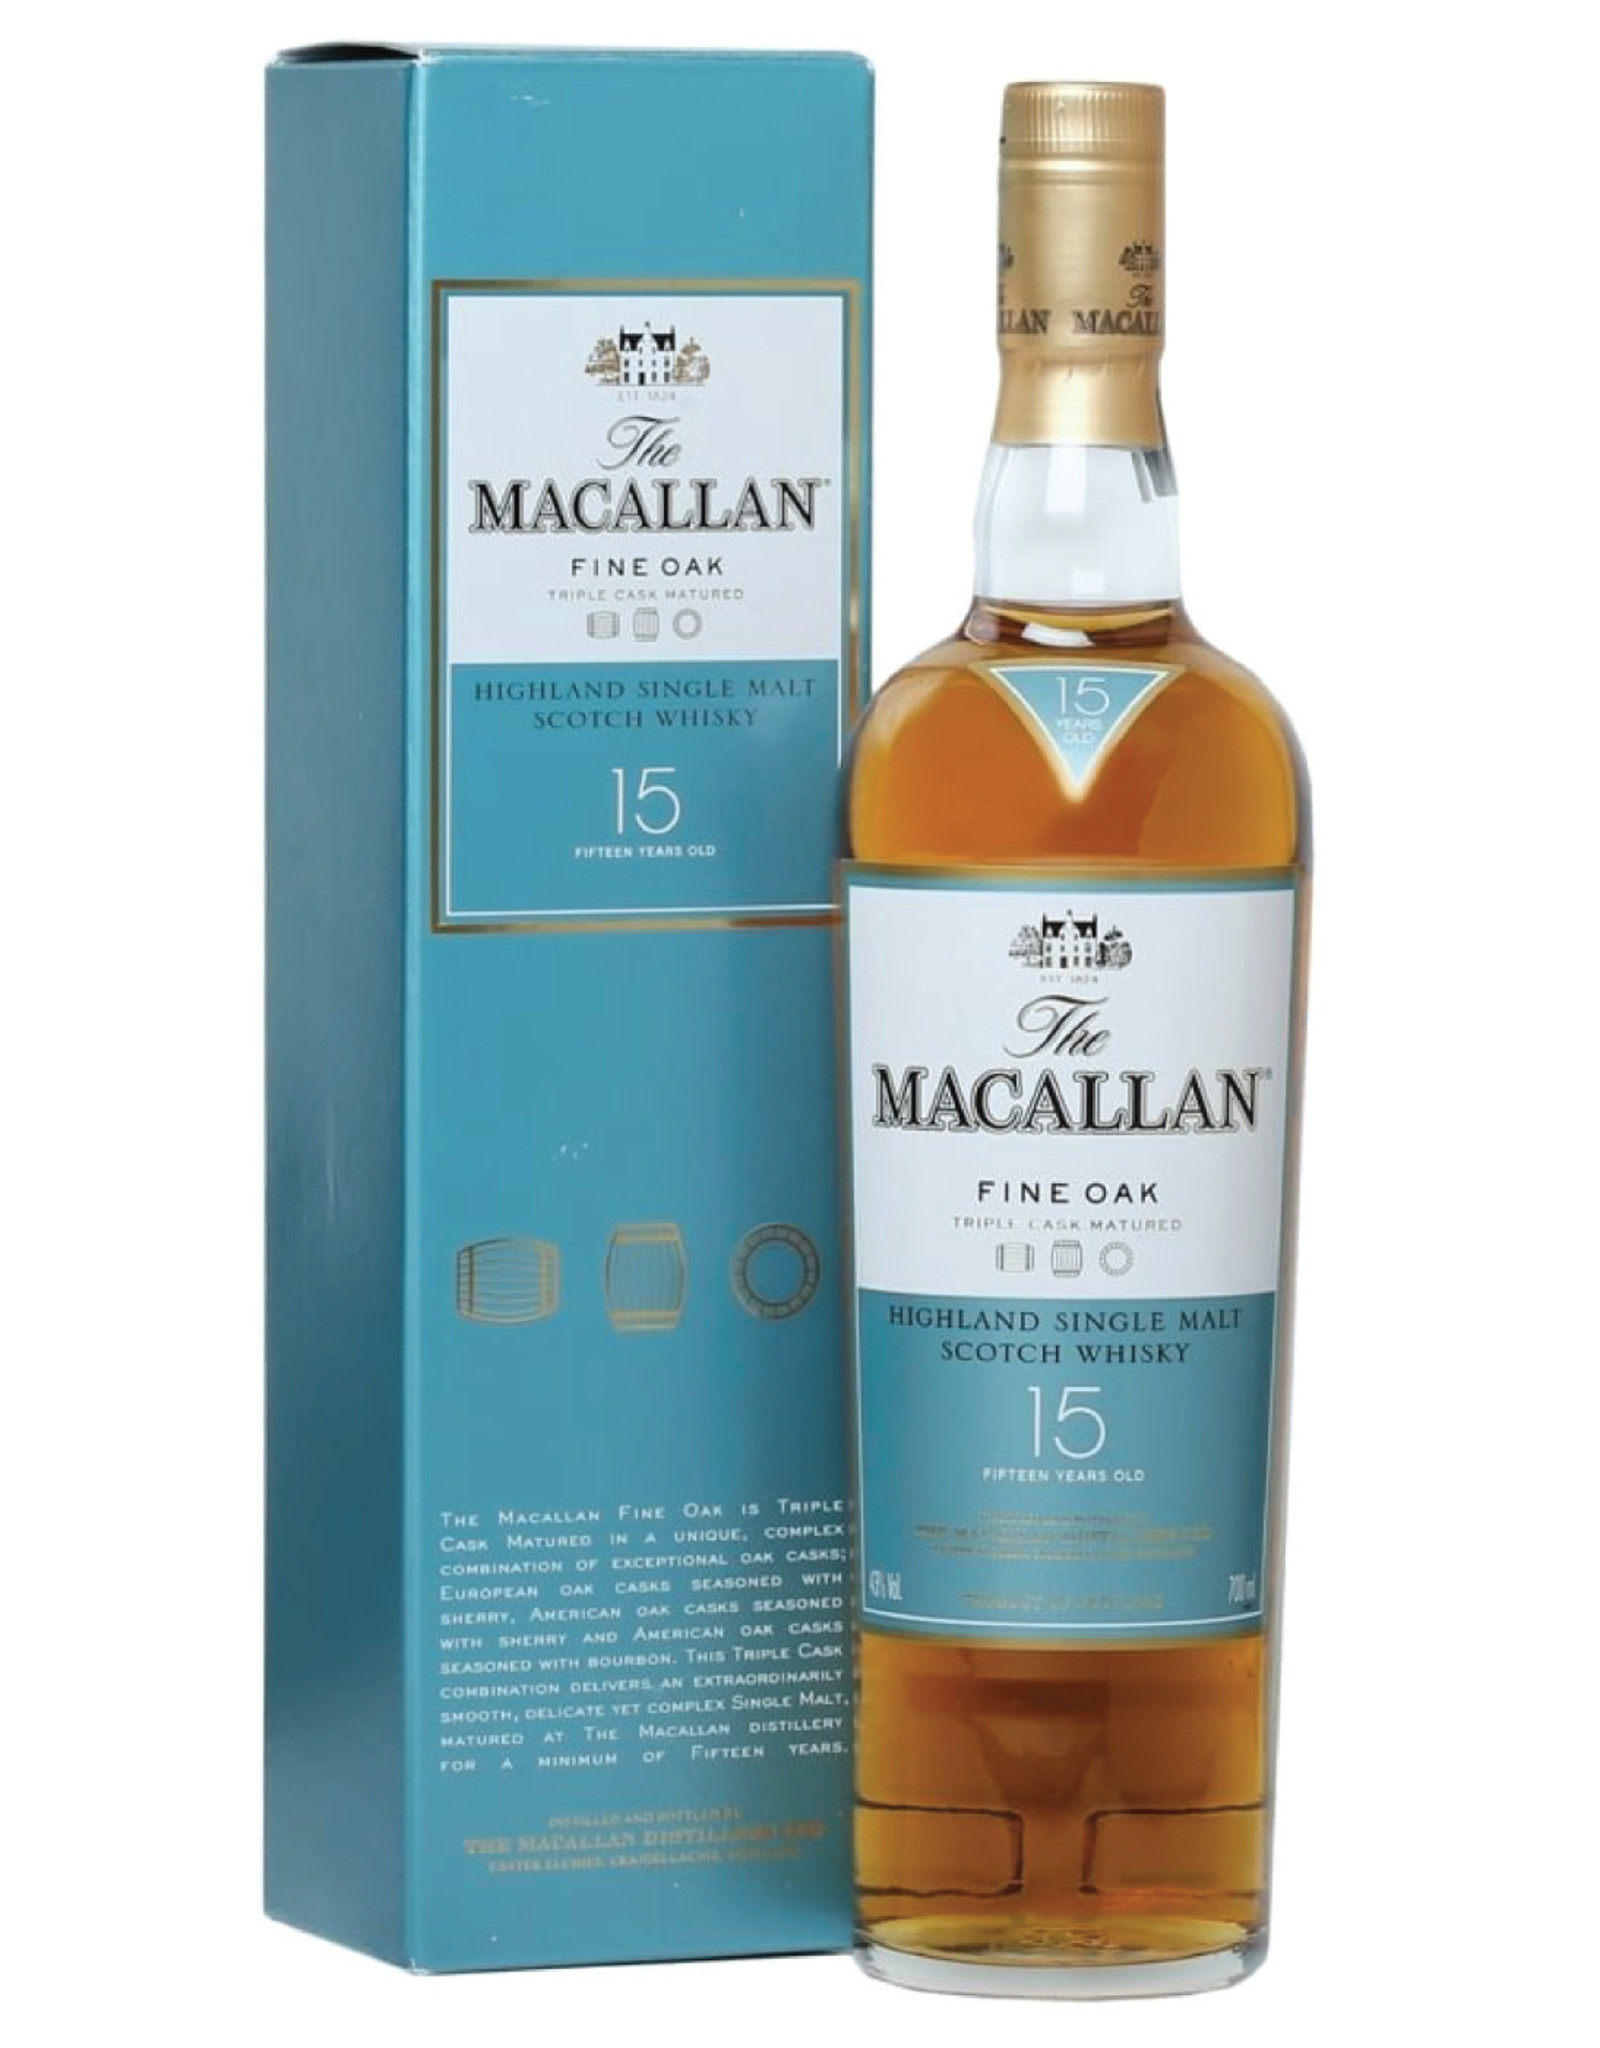 The Macallan The Macallan Fine Oak 15 Years Old 750 ml